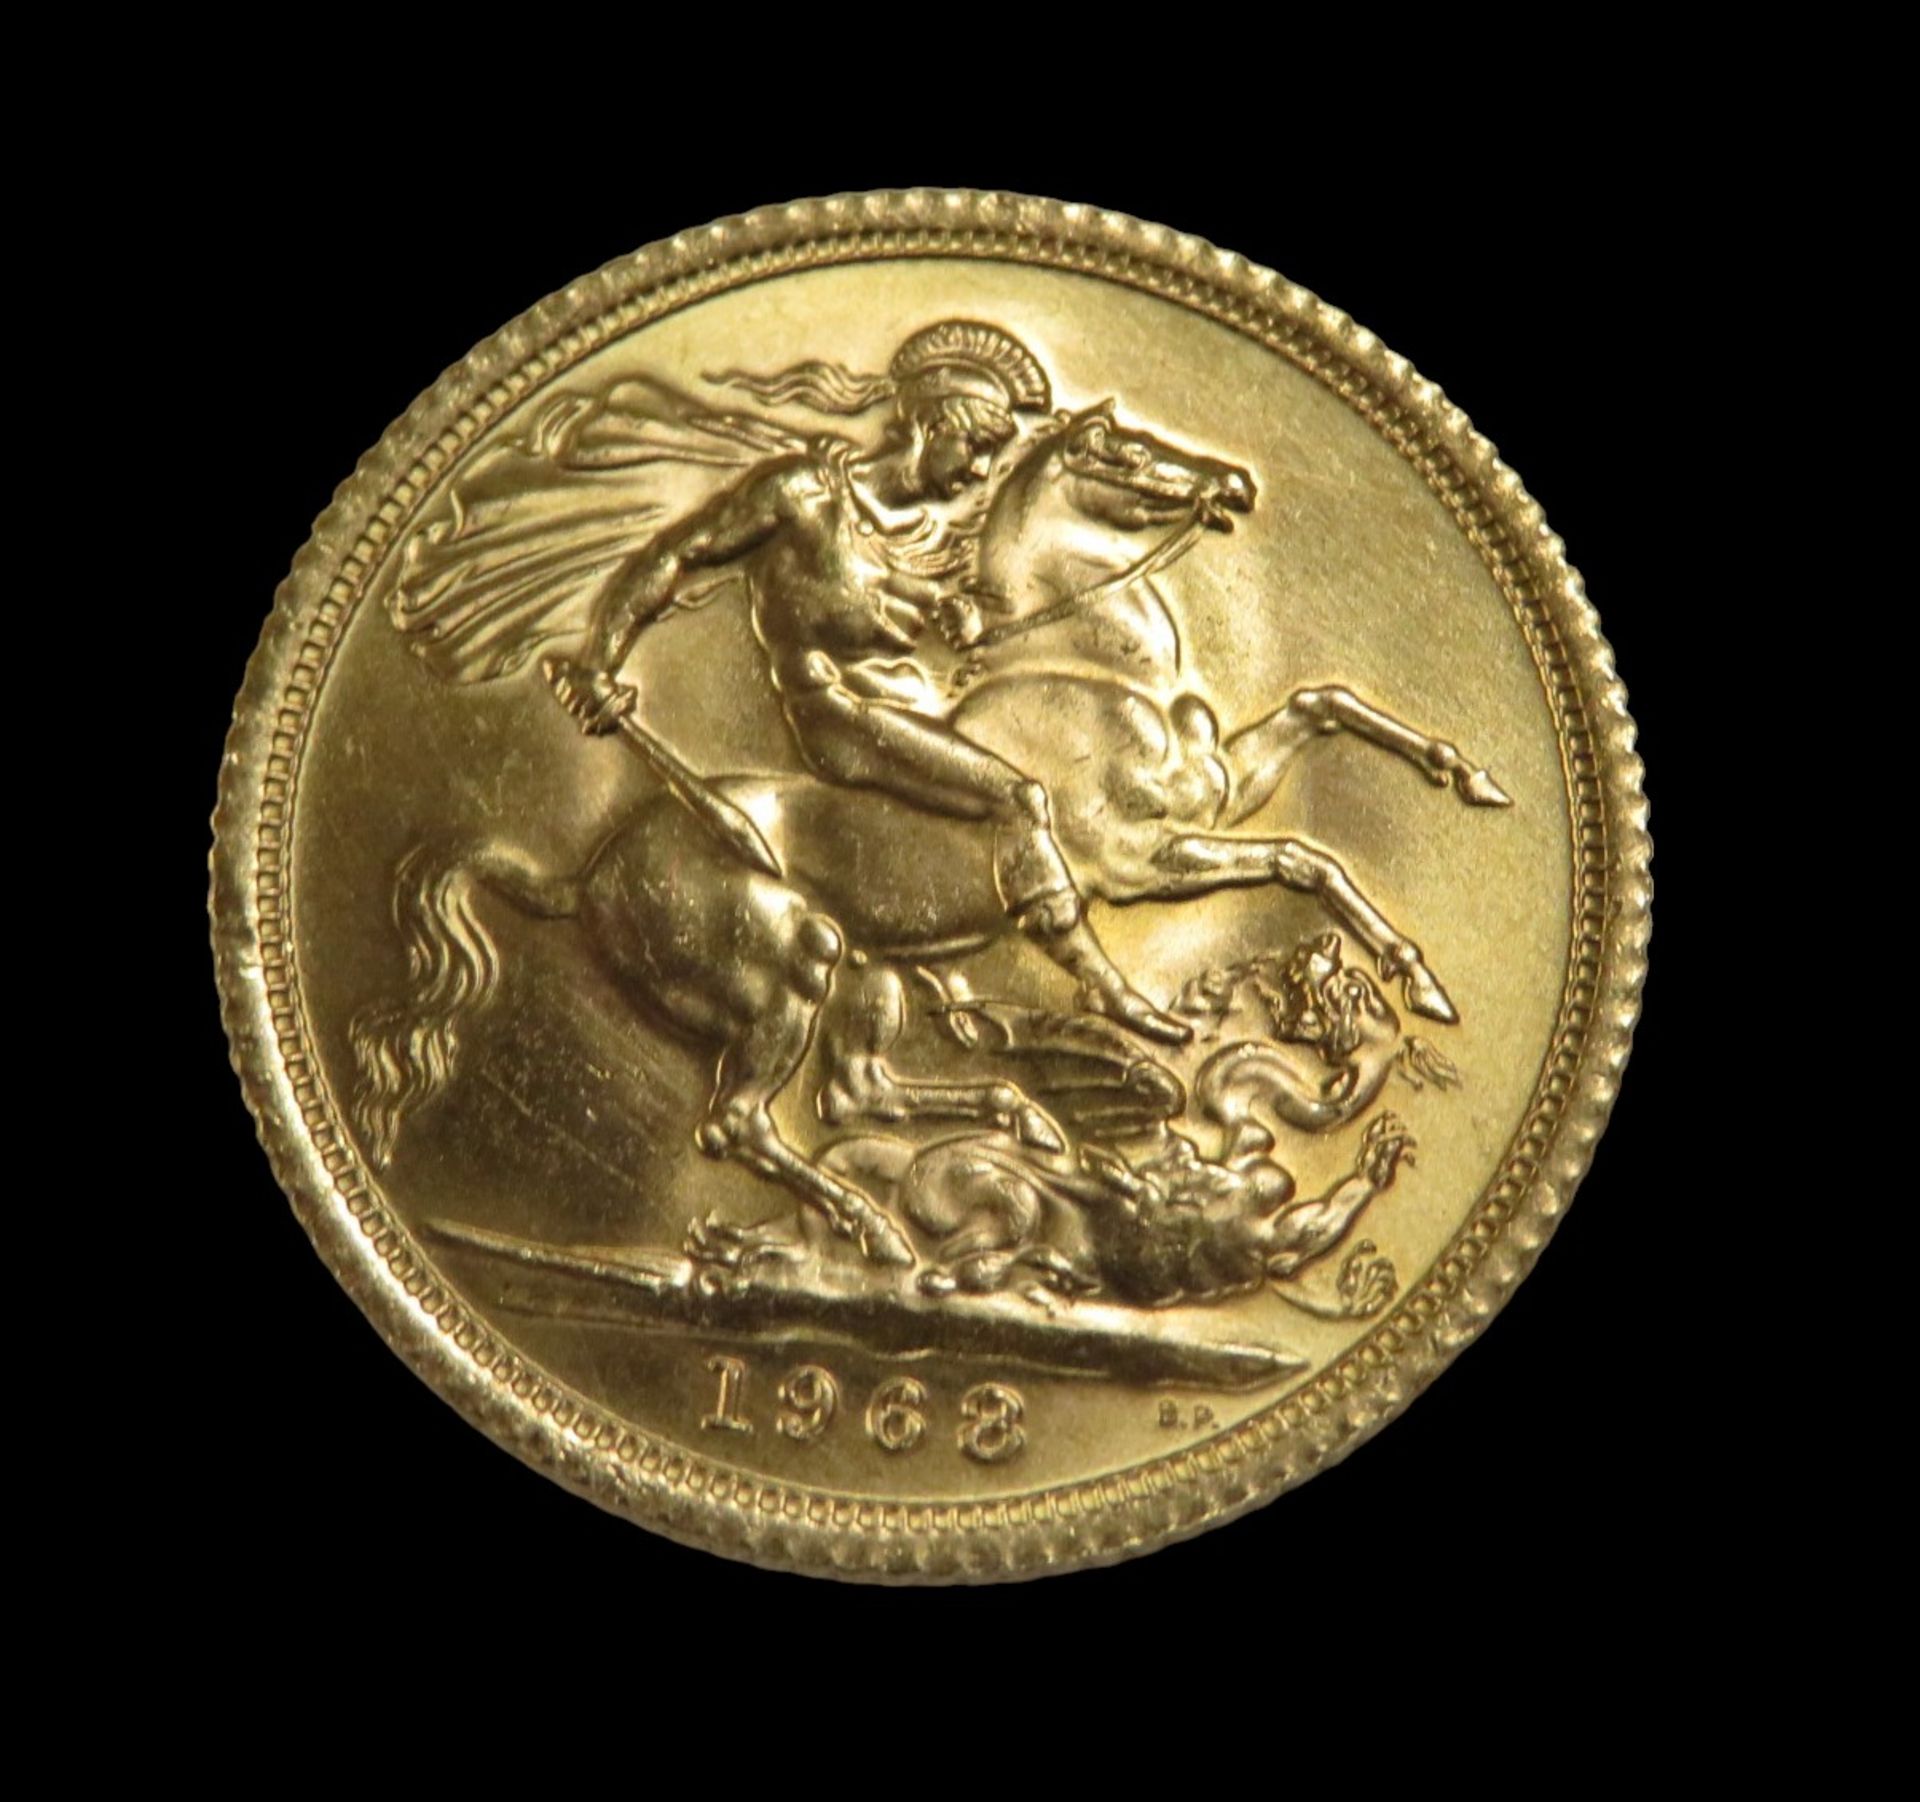 Goldmünze, 1 Pfund, Sovereign, Elizabeth II, 1968, Gold 916/000, 7,99 g, d 2,2 cm. - Bild 2 aus 2